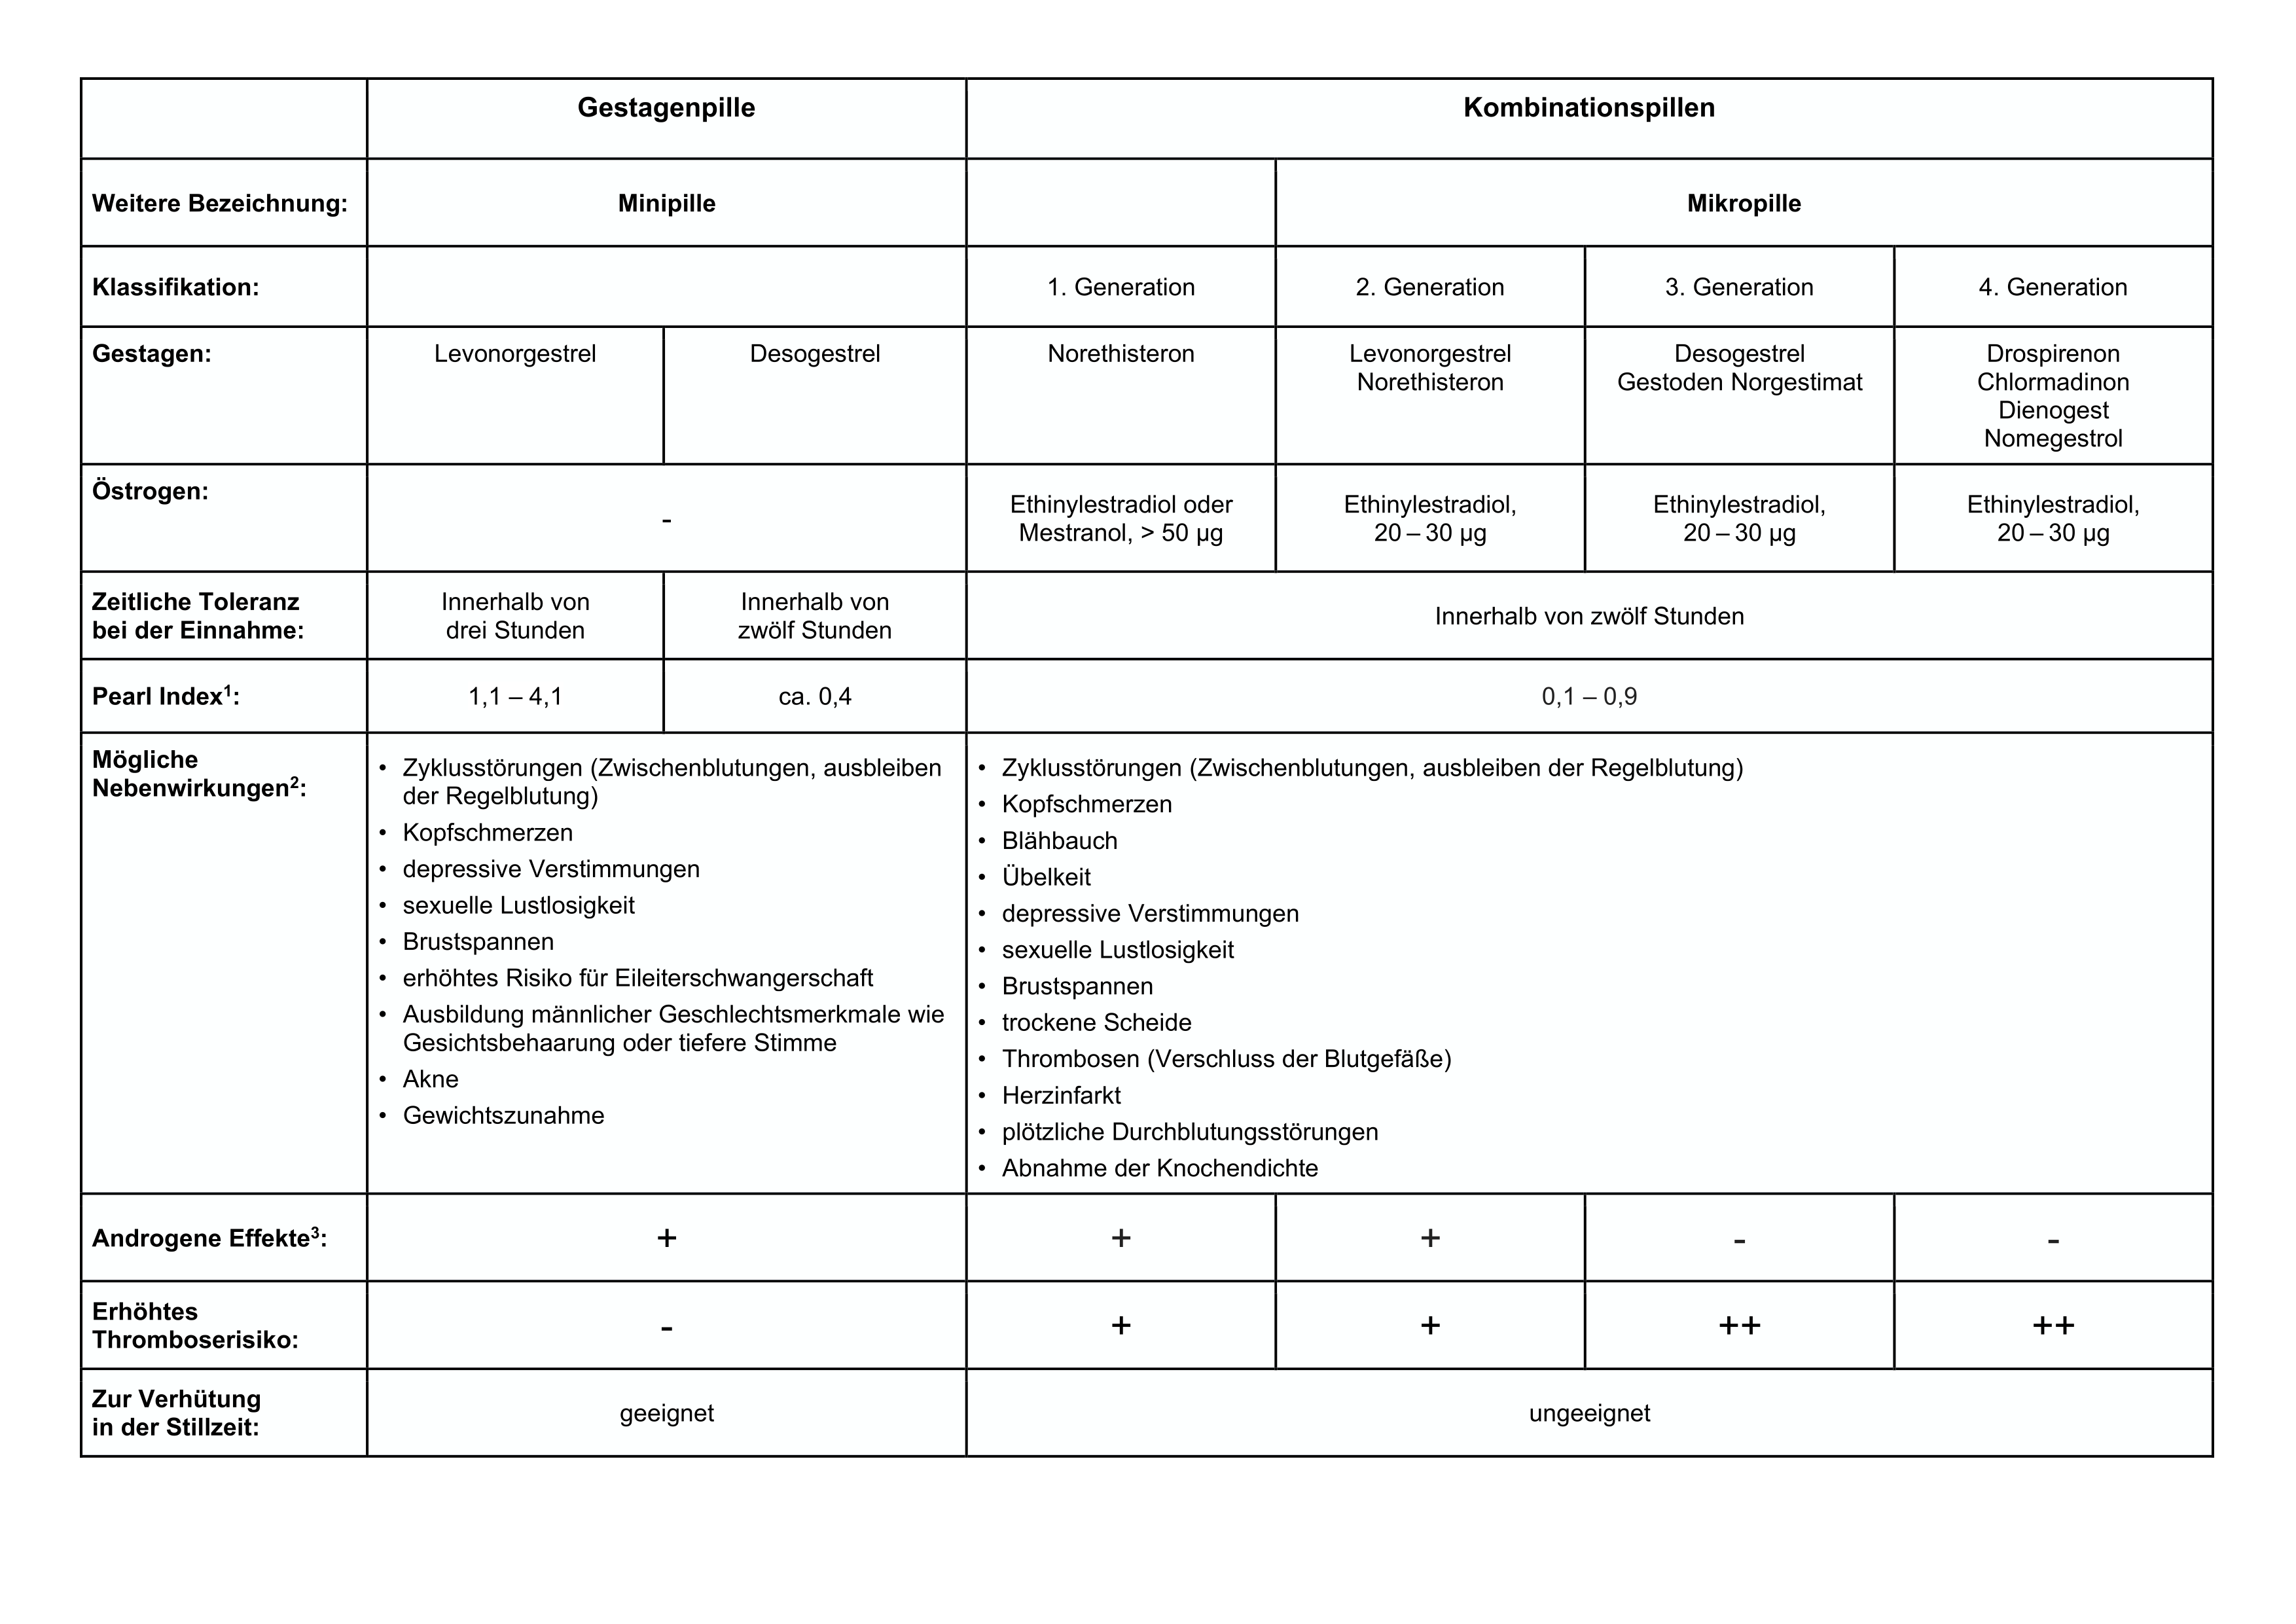 Antibabypille im Vergleich - Tabelle